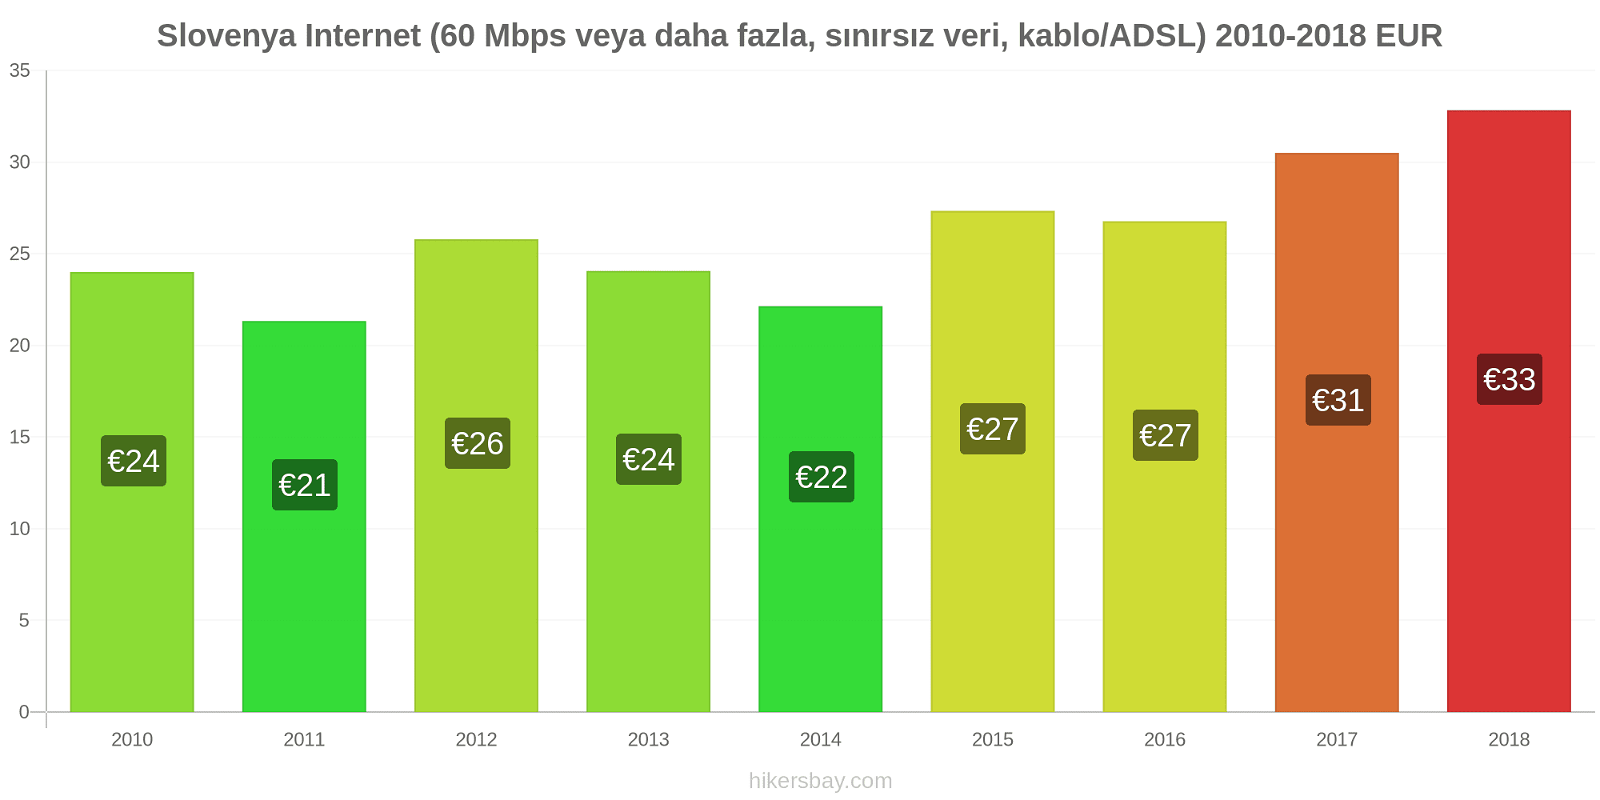 Slovenya fiyat değişiklikleri İnternet (60 Mbps veya daha fazla, sınırsız veri, kablo/ADSL) hikersbay.com